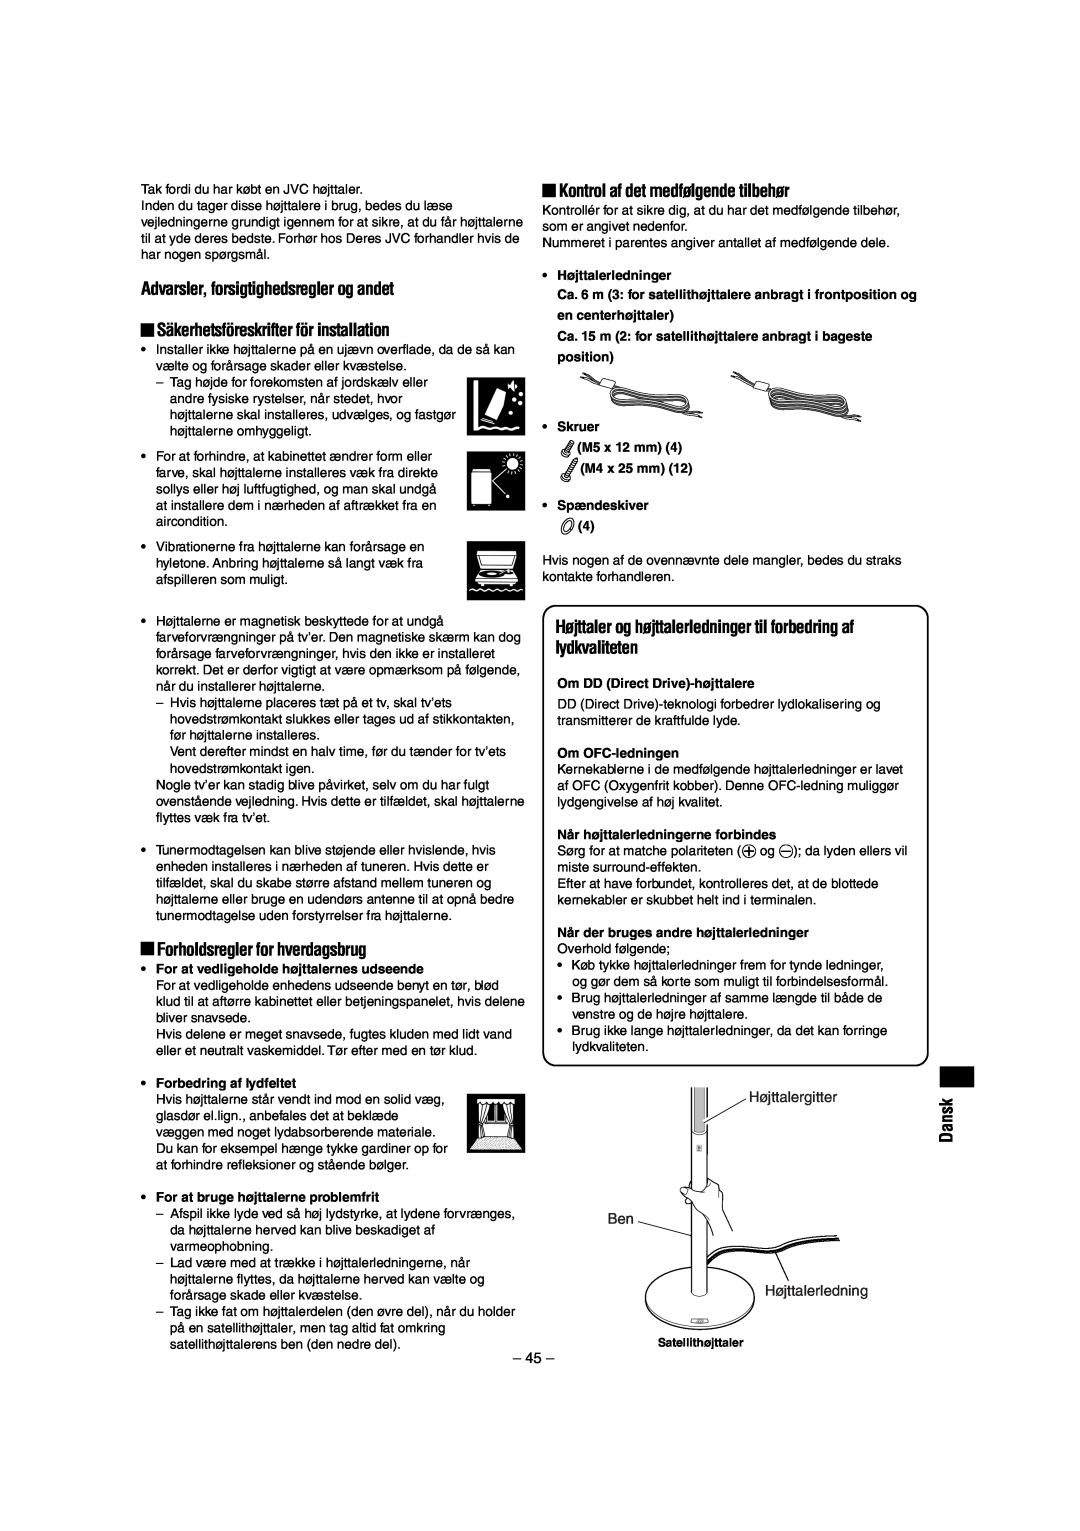 JVC LVT0953-001B manual Advarsler, forsigtighedsregler og andet, Forholdsregler for hverdagsbrug, Dansk 